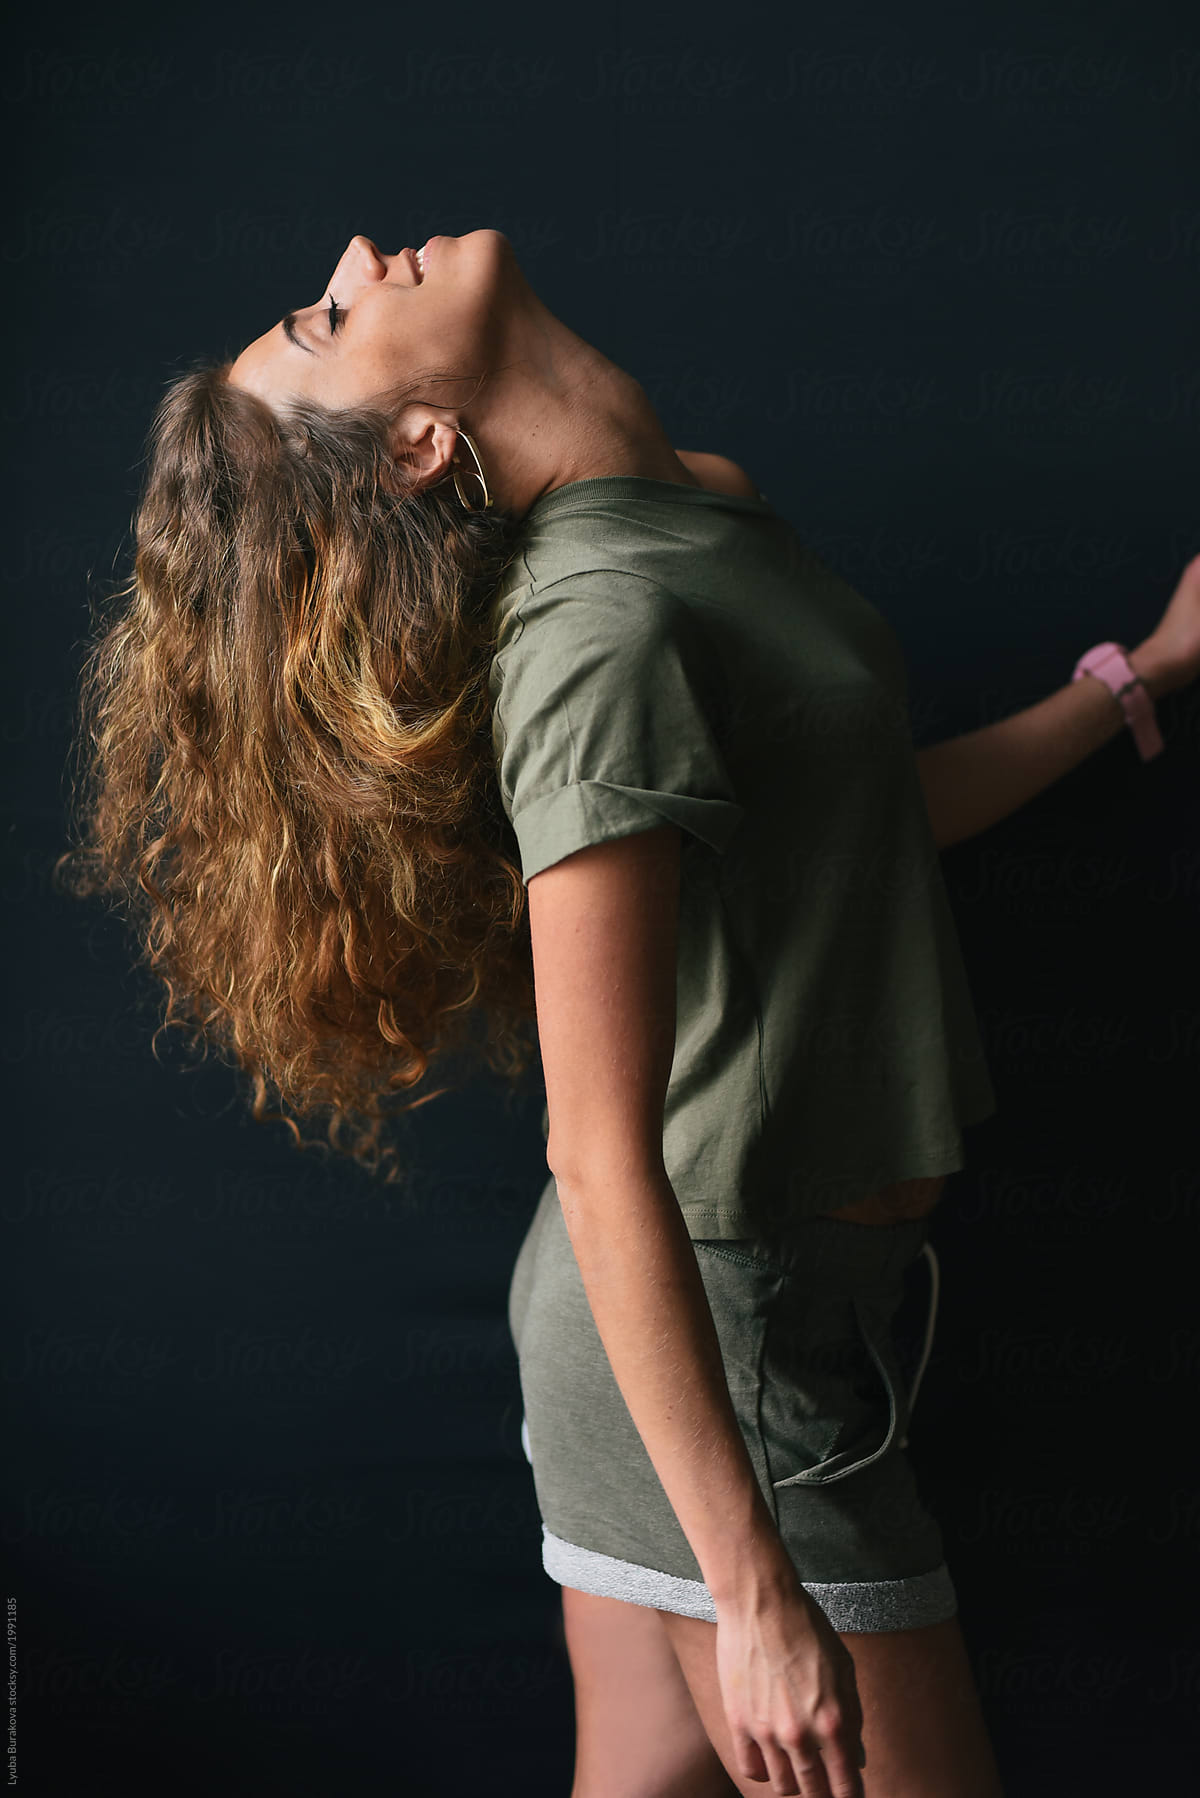 Profile Of Young Woman With Curly Hair Del Colaborador De Stocksy Amor Burakova Stocksy 